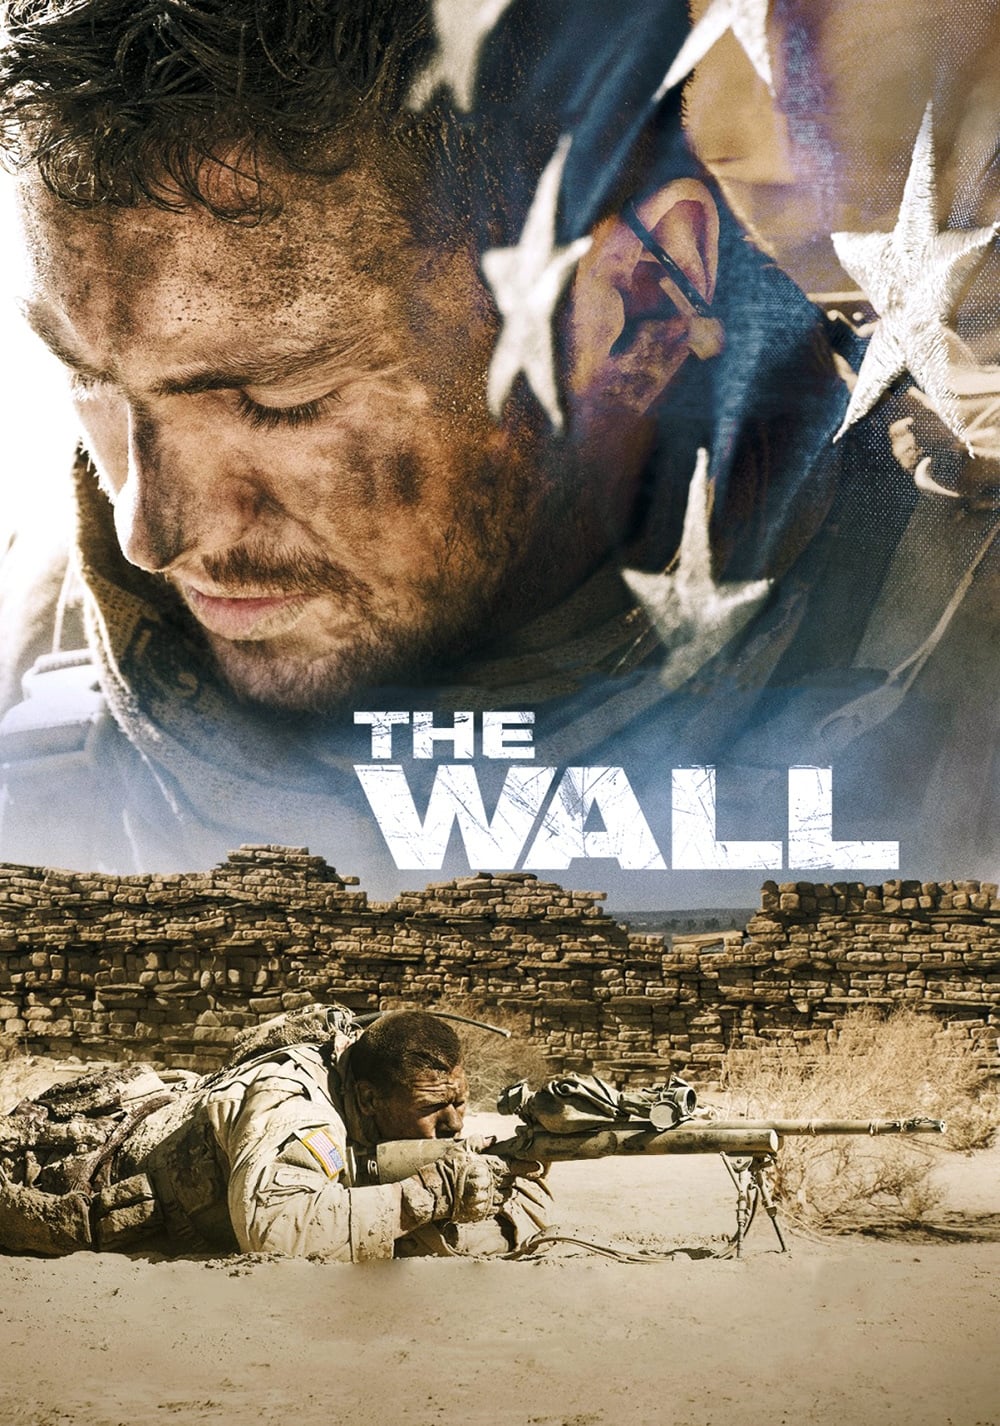 The Wall [Sub-ITA] (2017)